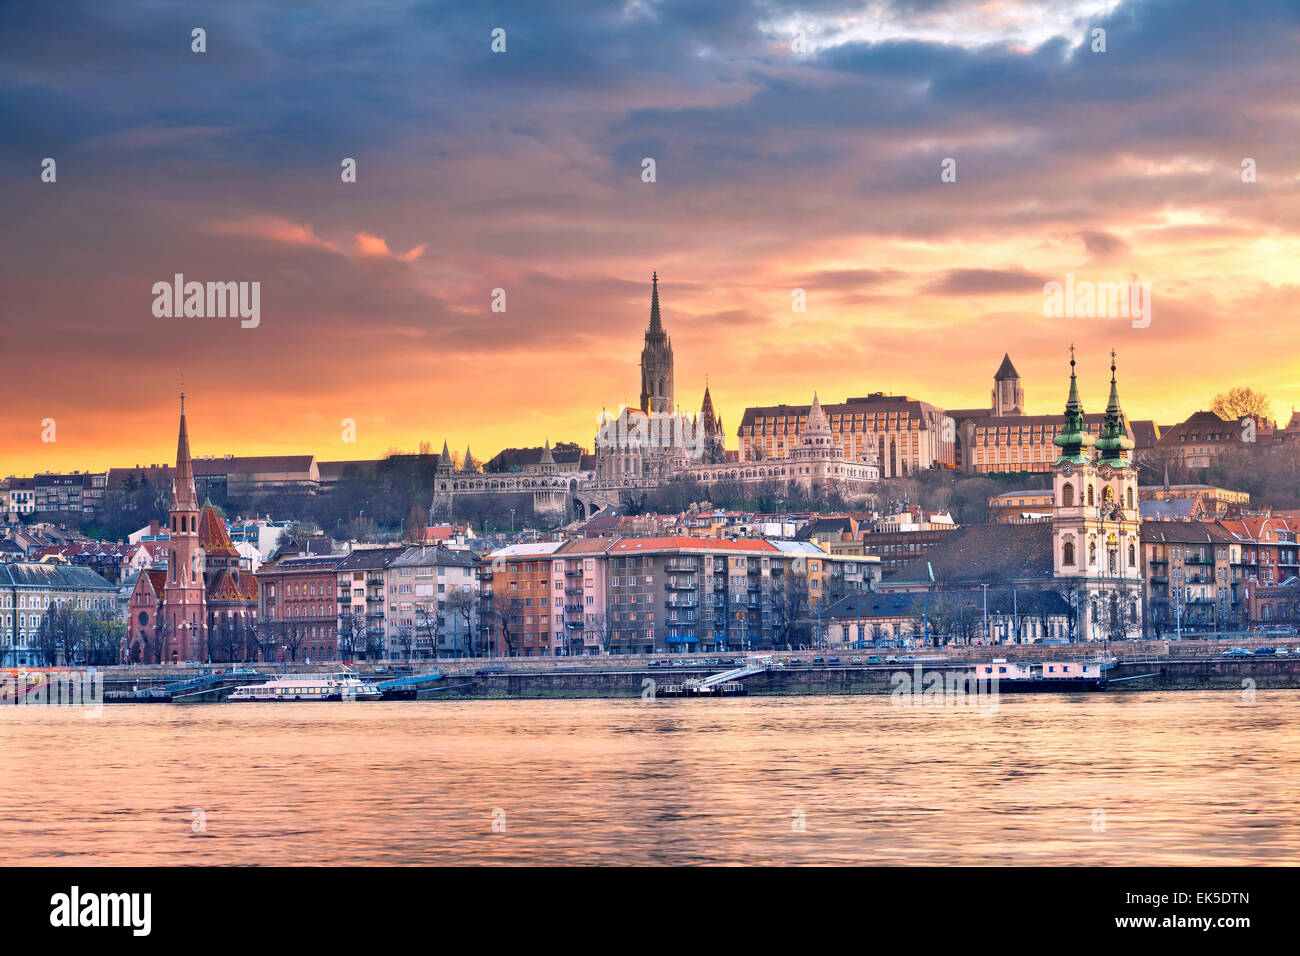 Budapest. Image of Budapest skyline during spring sunset. Stock Photo